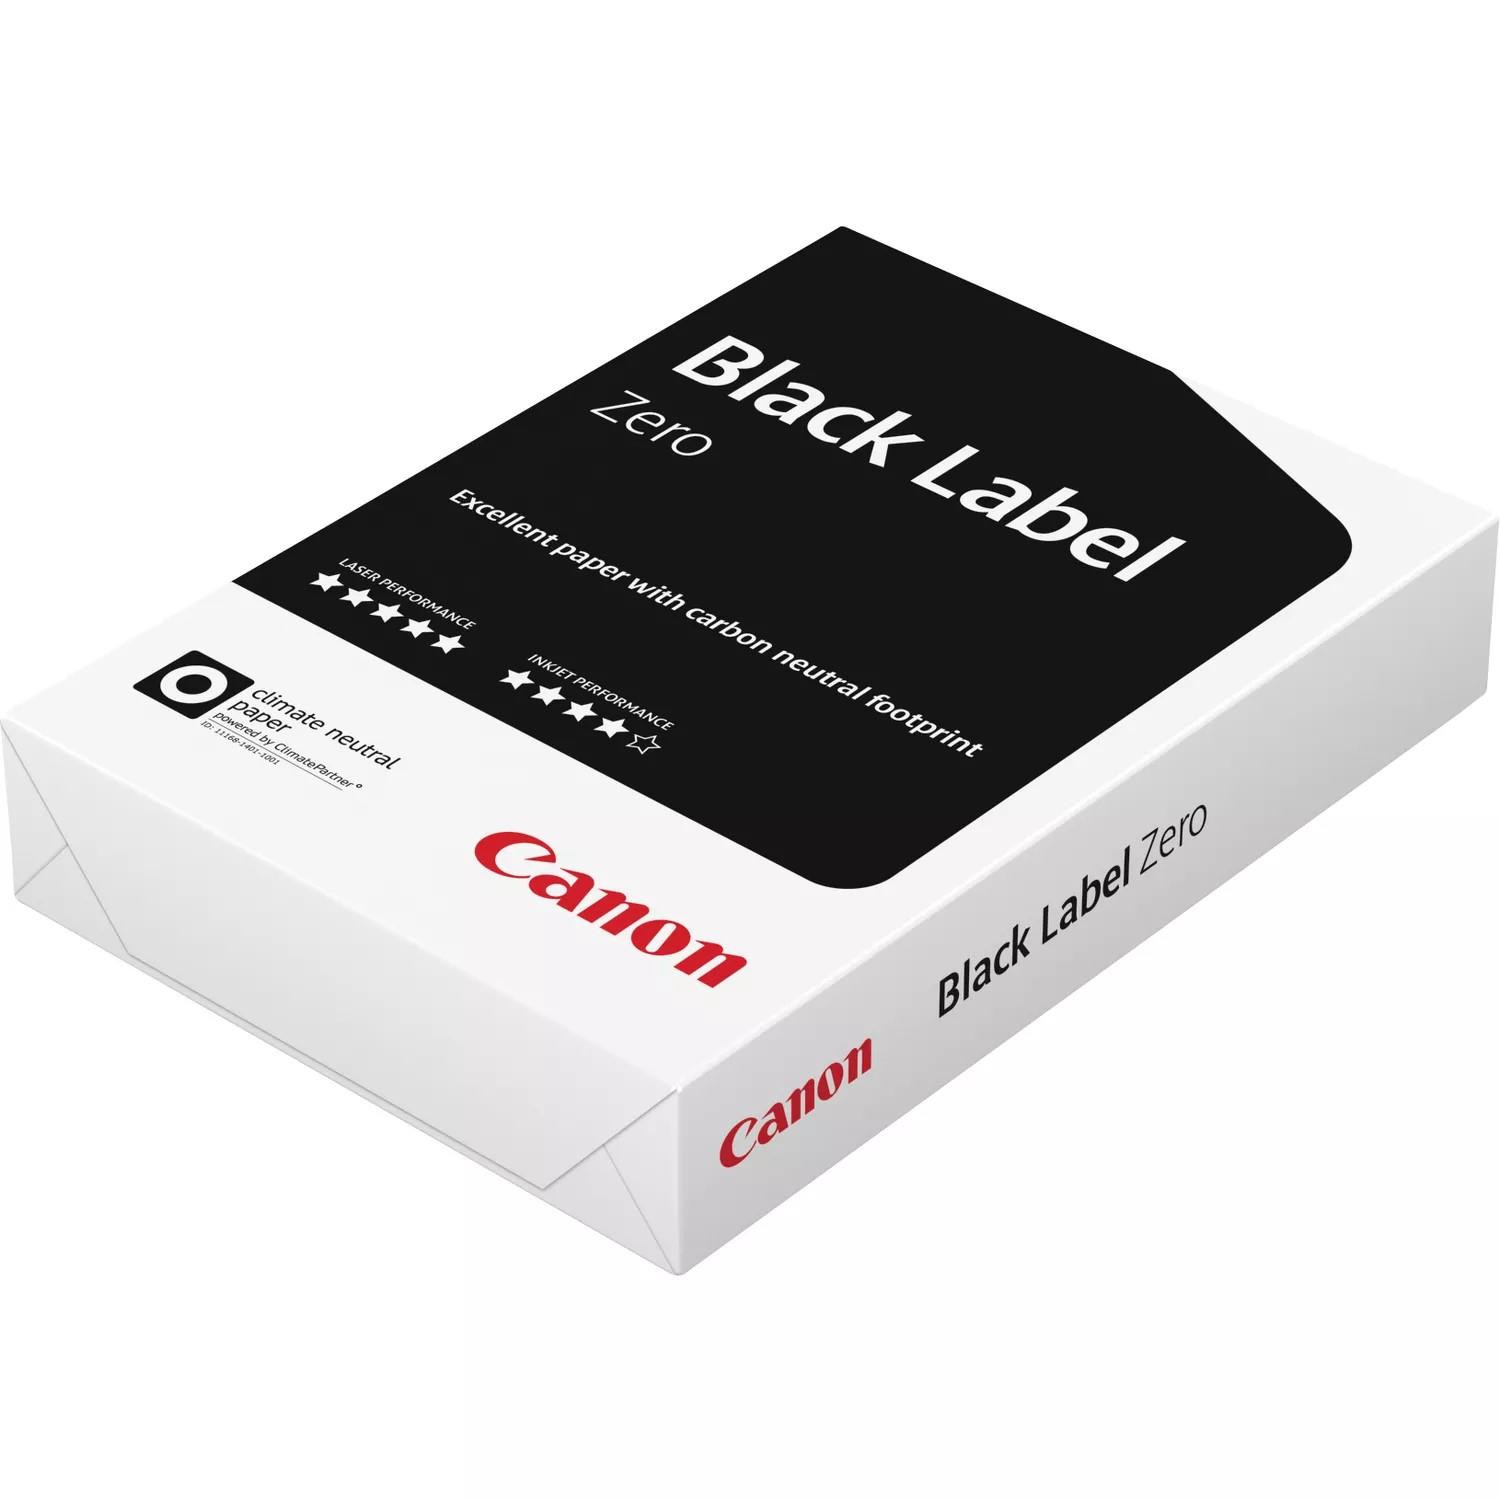 Canon Black label Plus printpapier A4